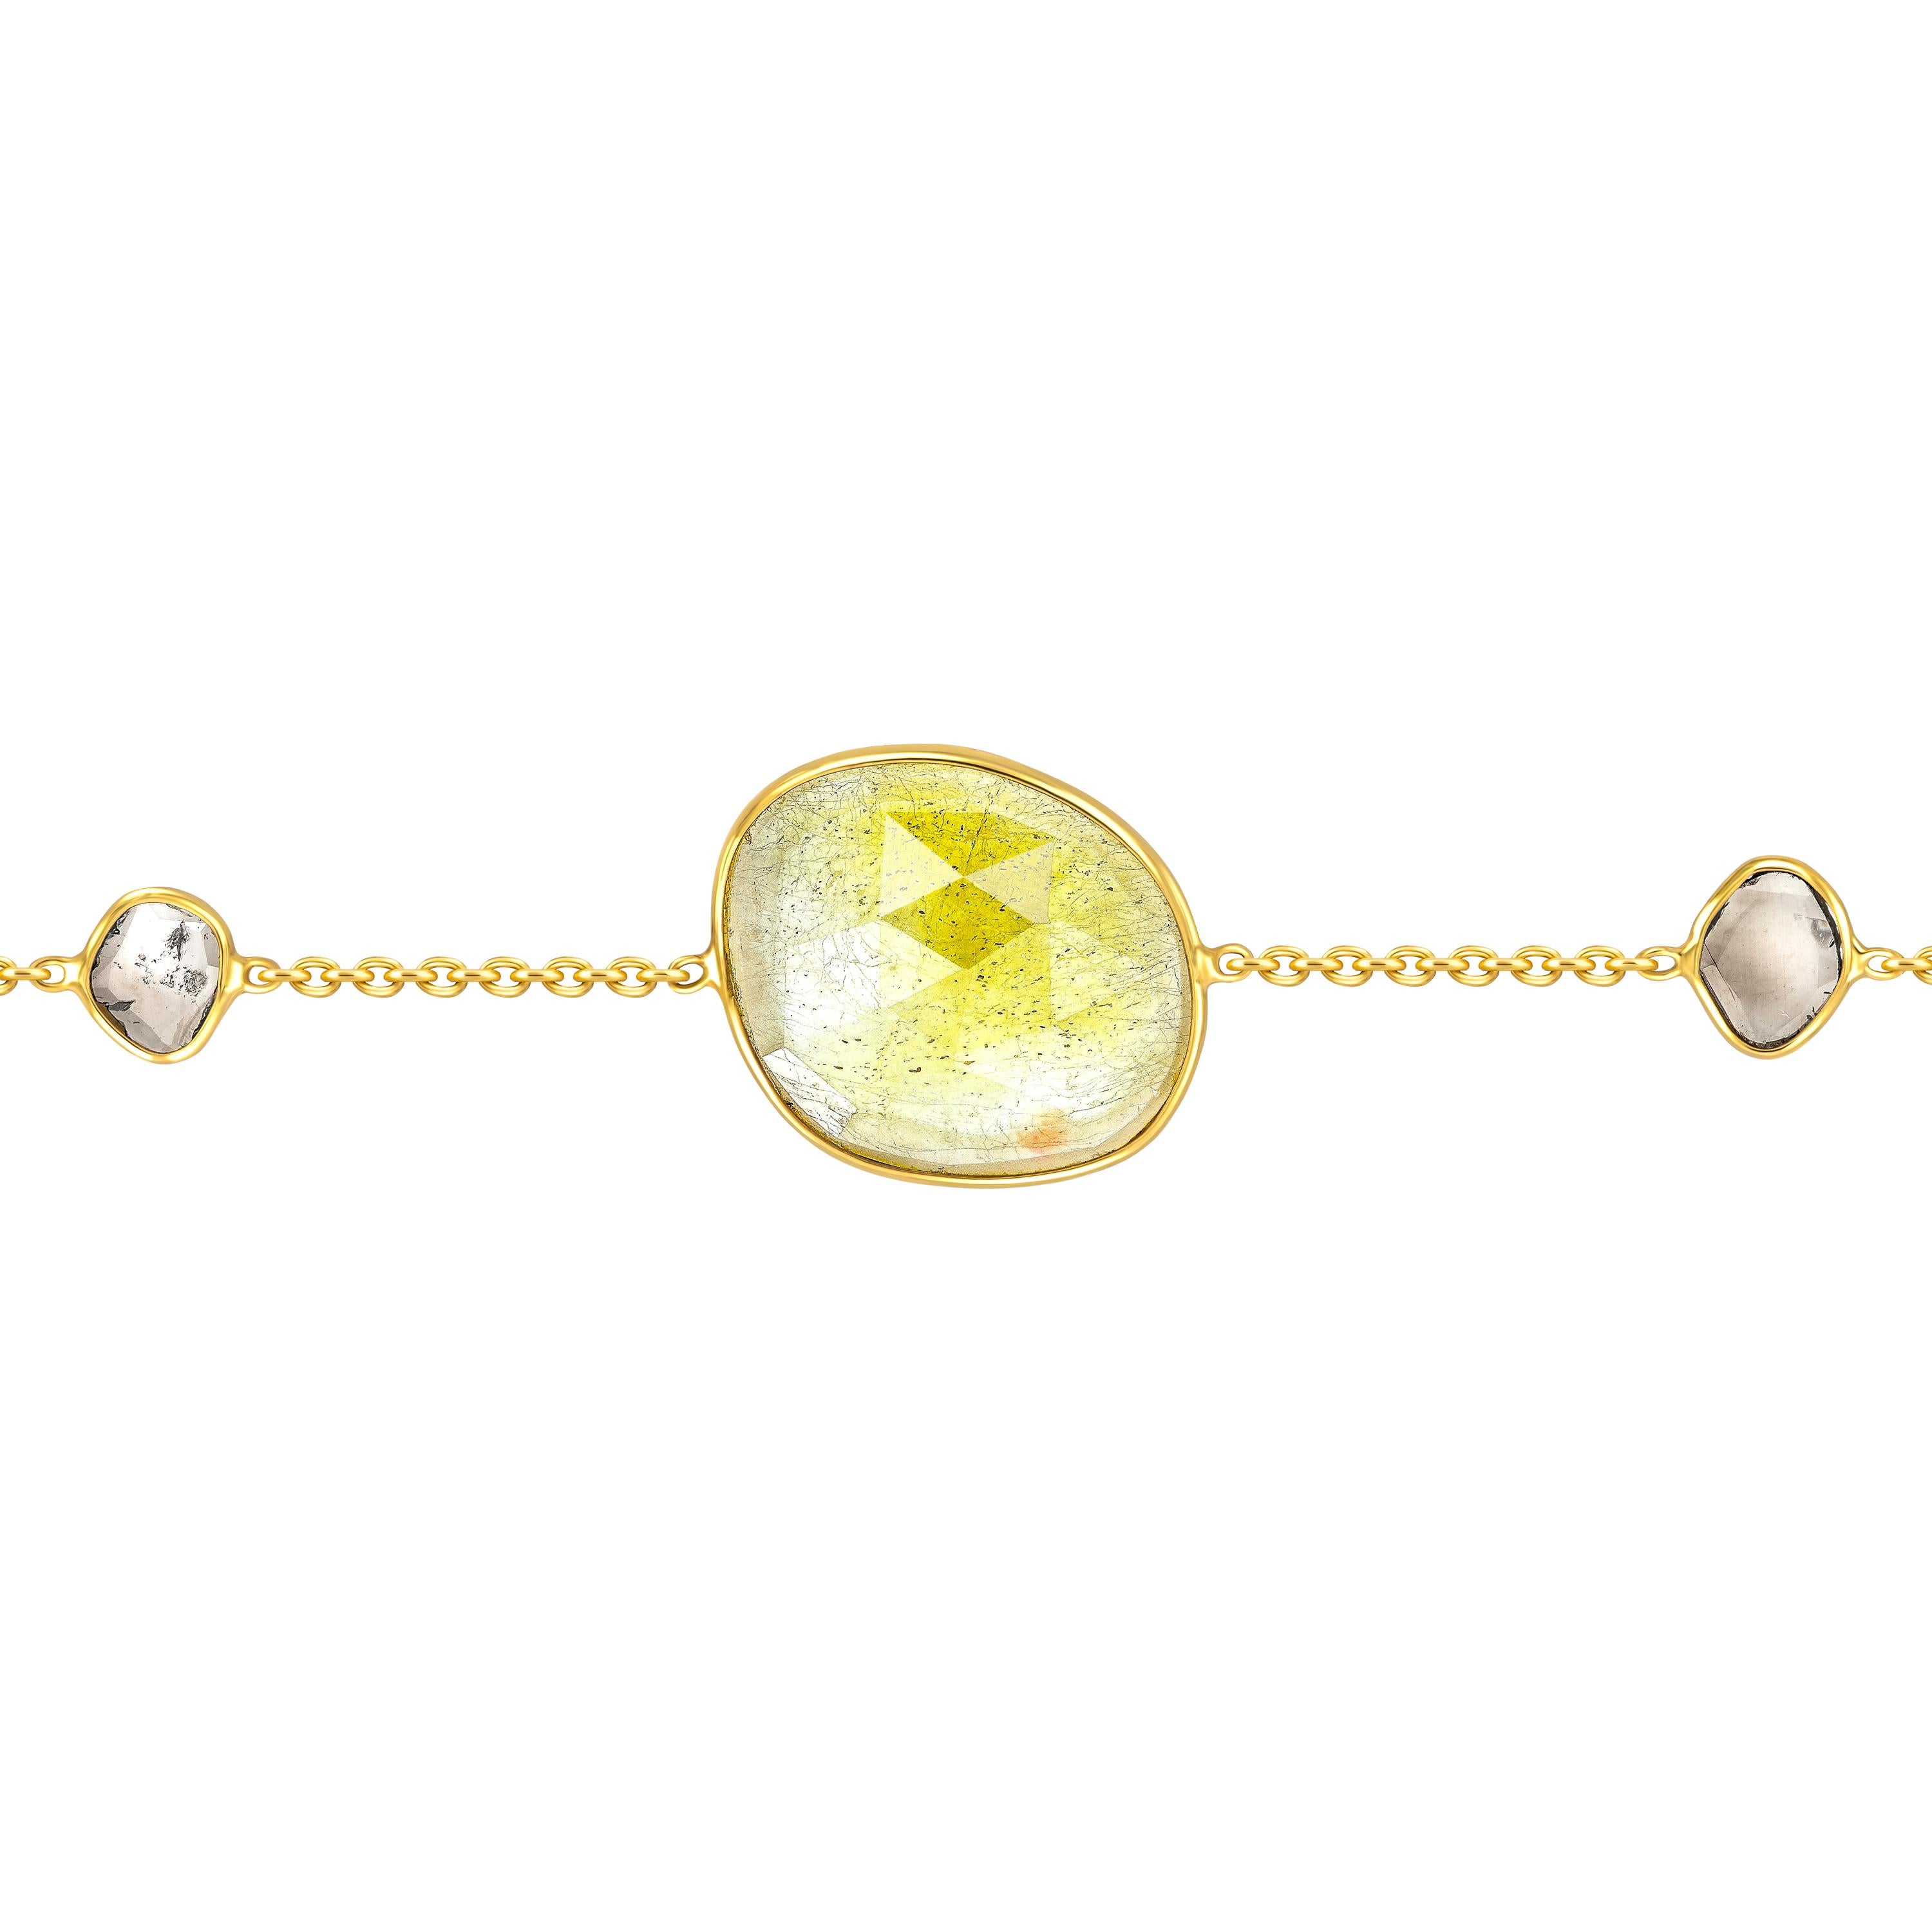 Schmücken Sie Ihr Handgelenk mit diesem wunderschönen Armband mit 3,25 Karat gelben Saphiren im Rosenschliff und 0,15 Karat Diamanten in zwei Scheiben, die in 18 Karat Gelbgold gefasst sind. Jedes Stück ist handgefertigt mit einem einzigartig